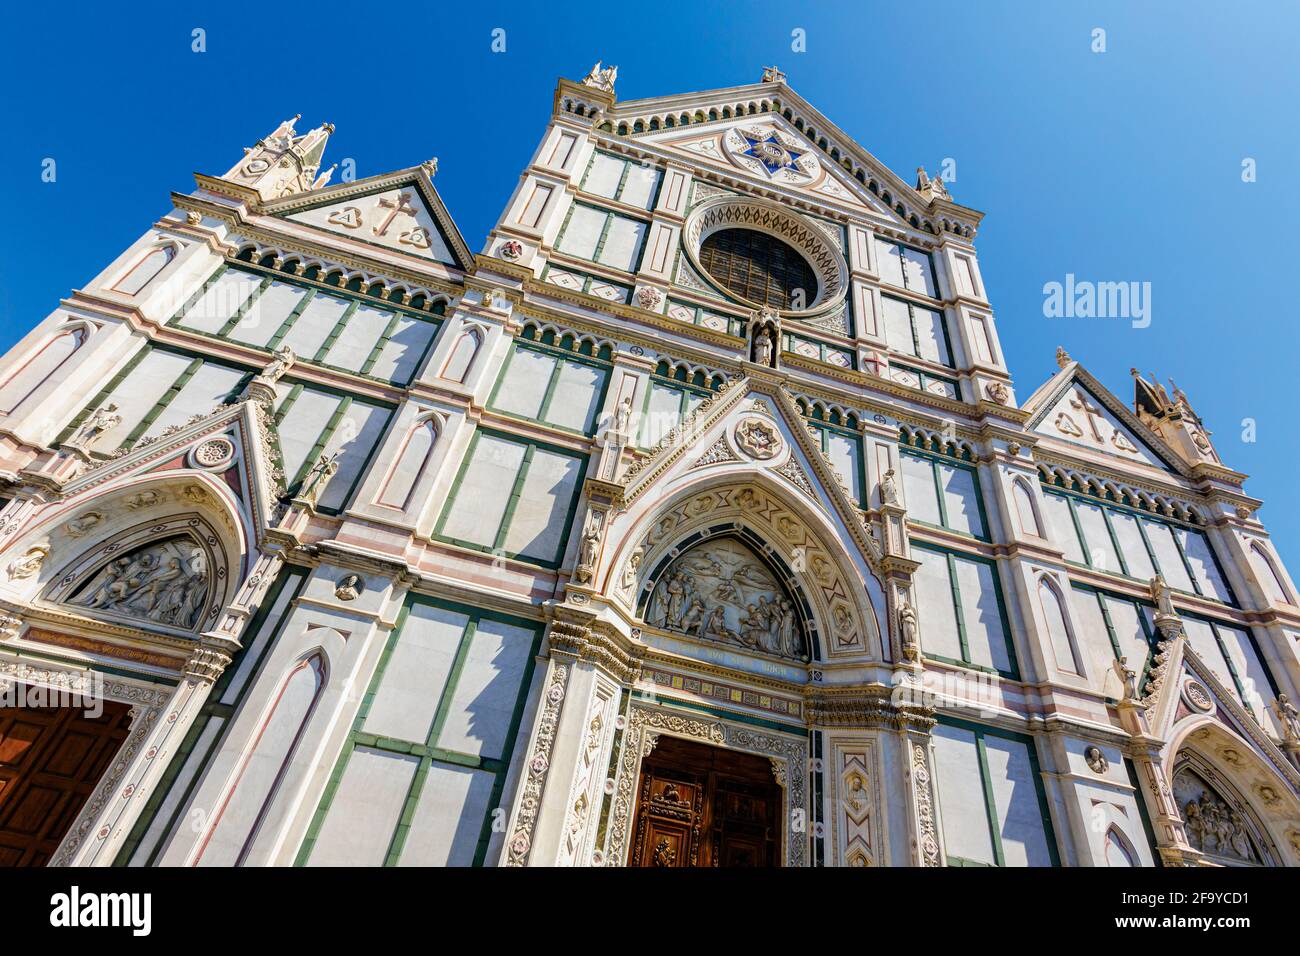 Firenze, Provincia di Firenze, Toscana, Italia. Chiesa di Santa Croce. Il centro storico di Firenze è patrimonio dell'umanità dell'UNESCO. Foto Stock